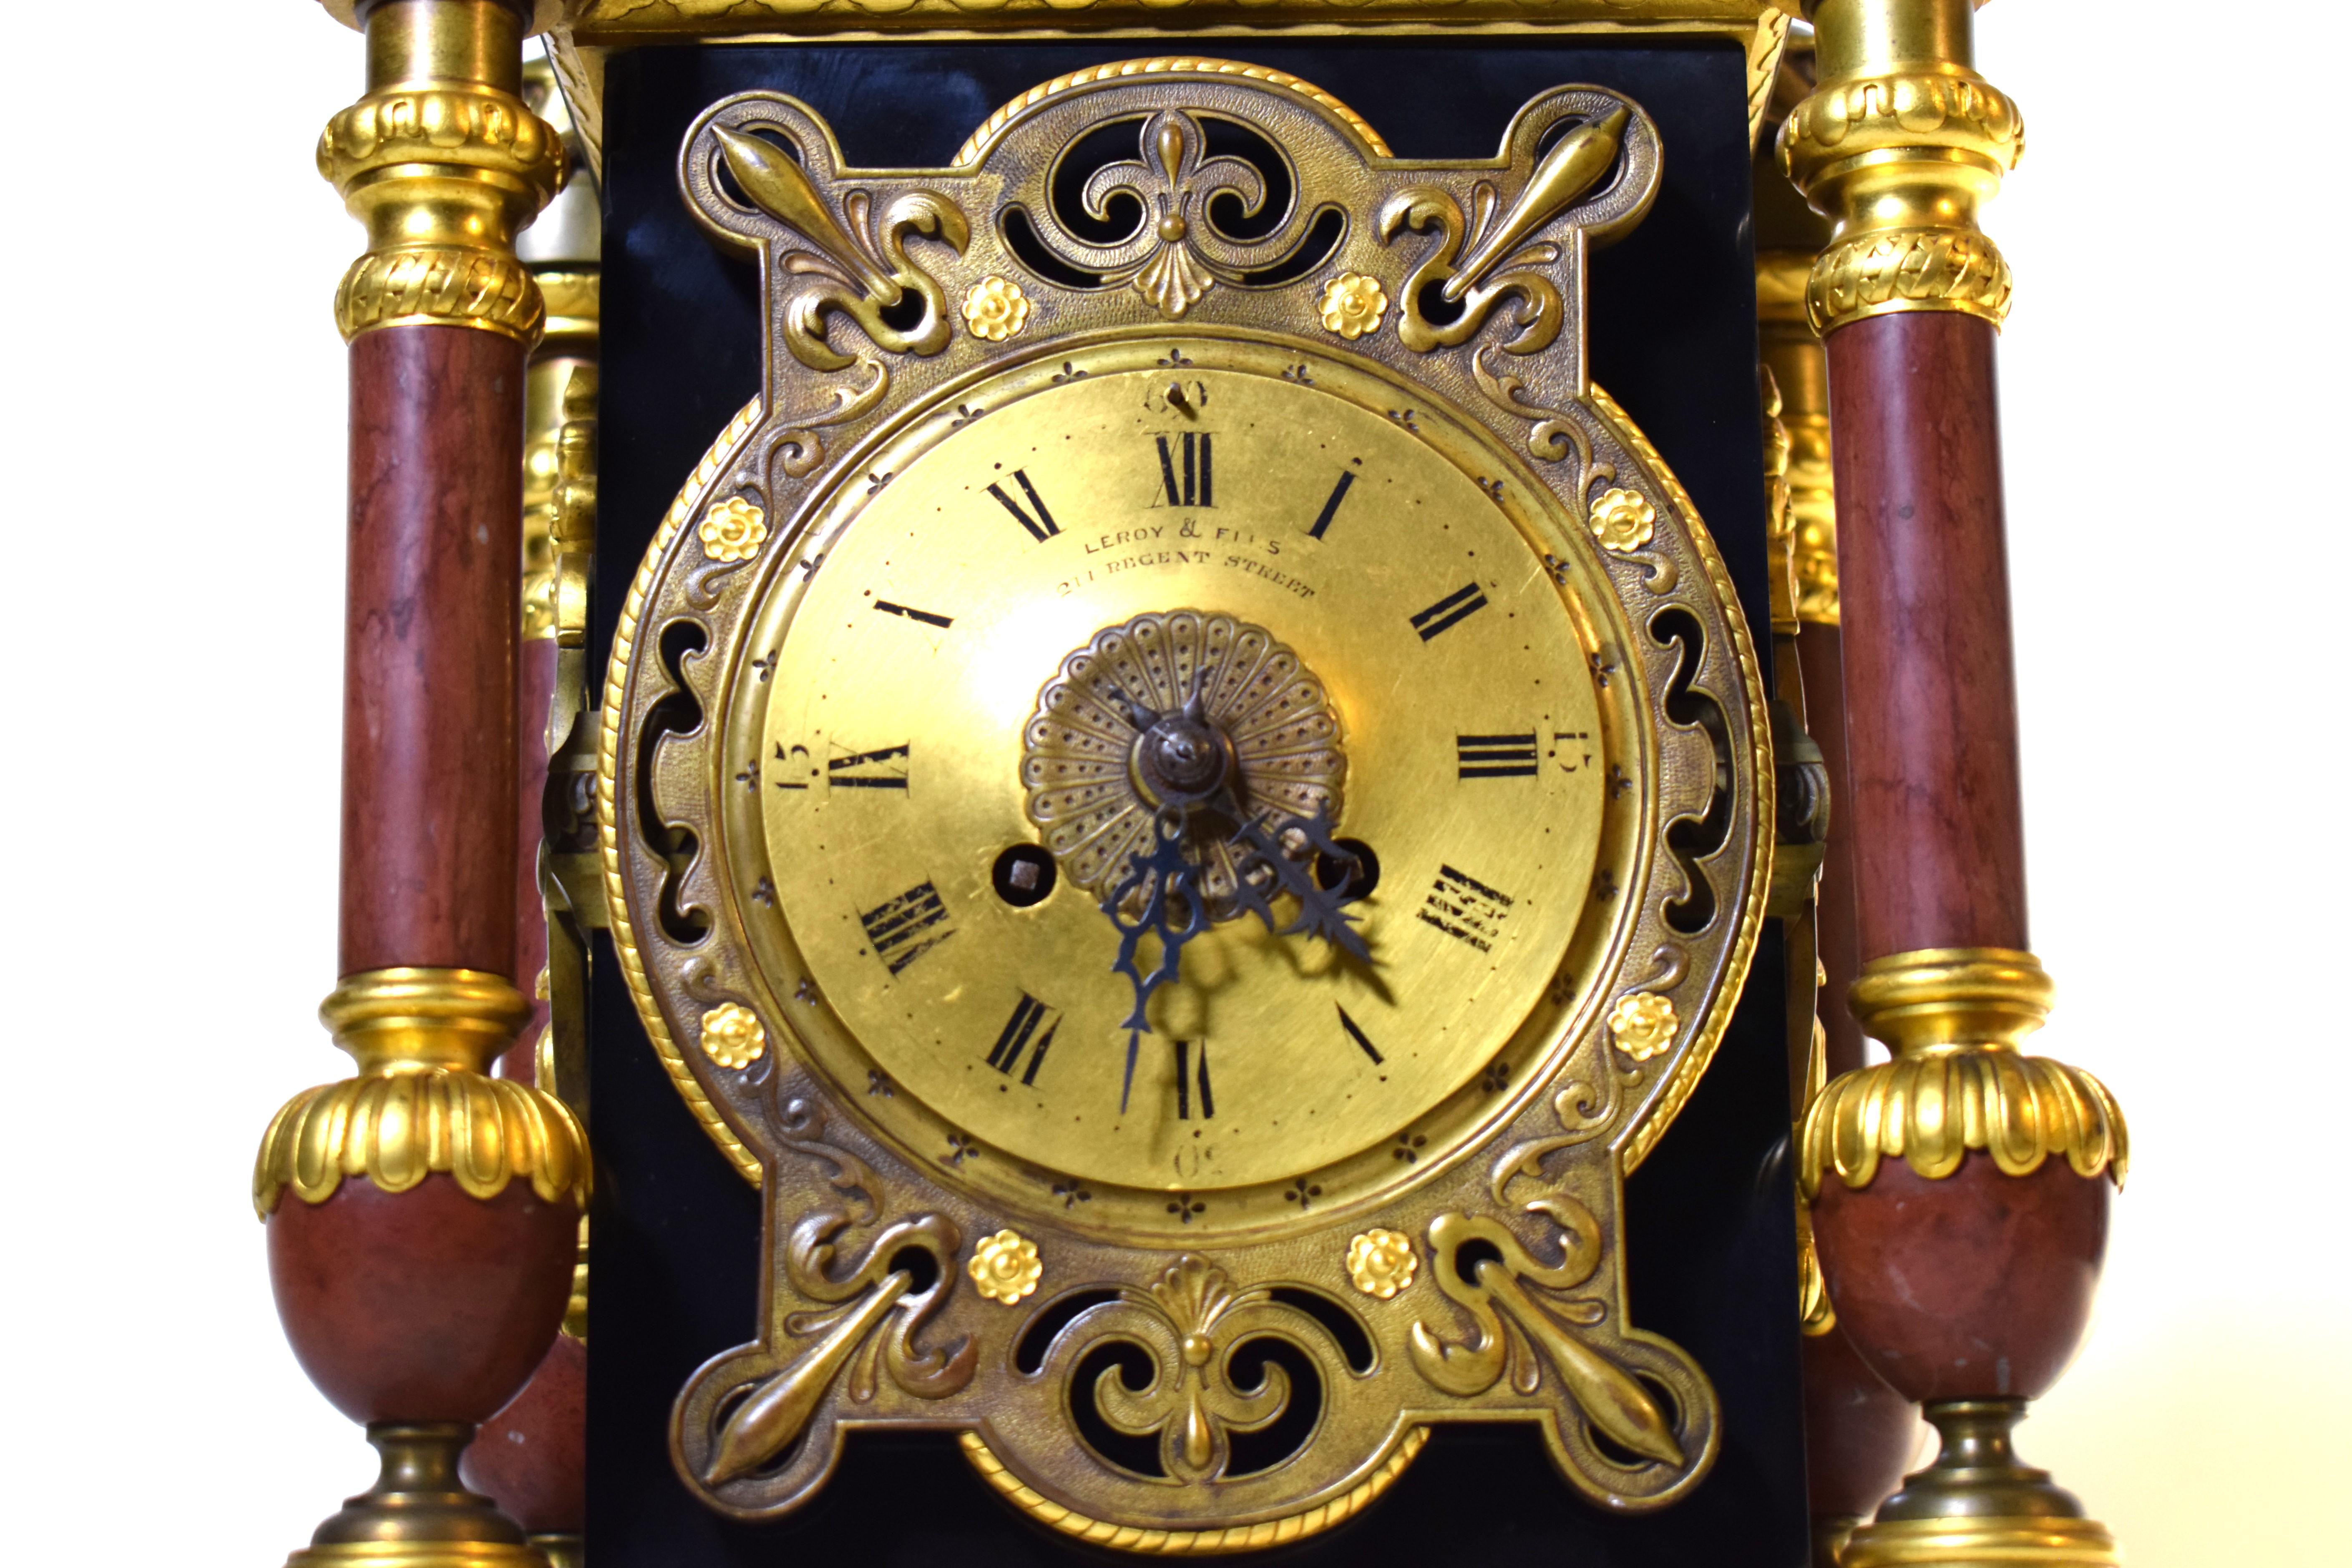 Le Roy & Fils Baroque Revival Partial Gilt Clock For Sale 9